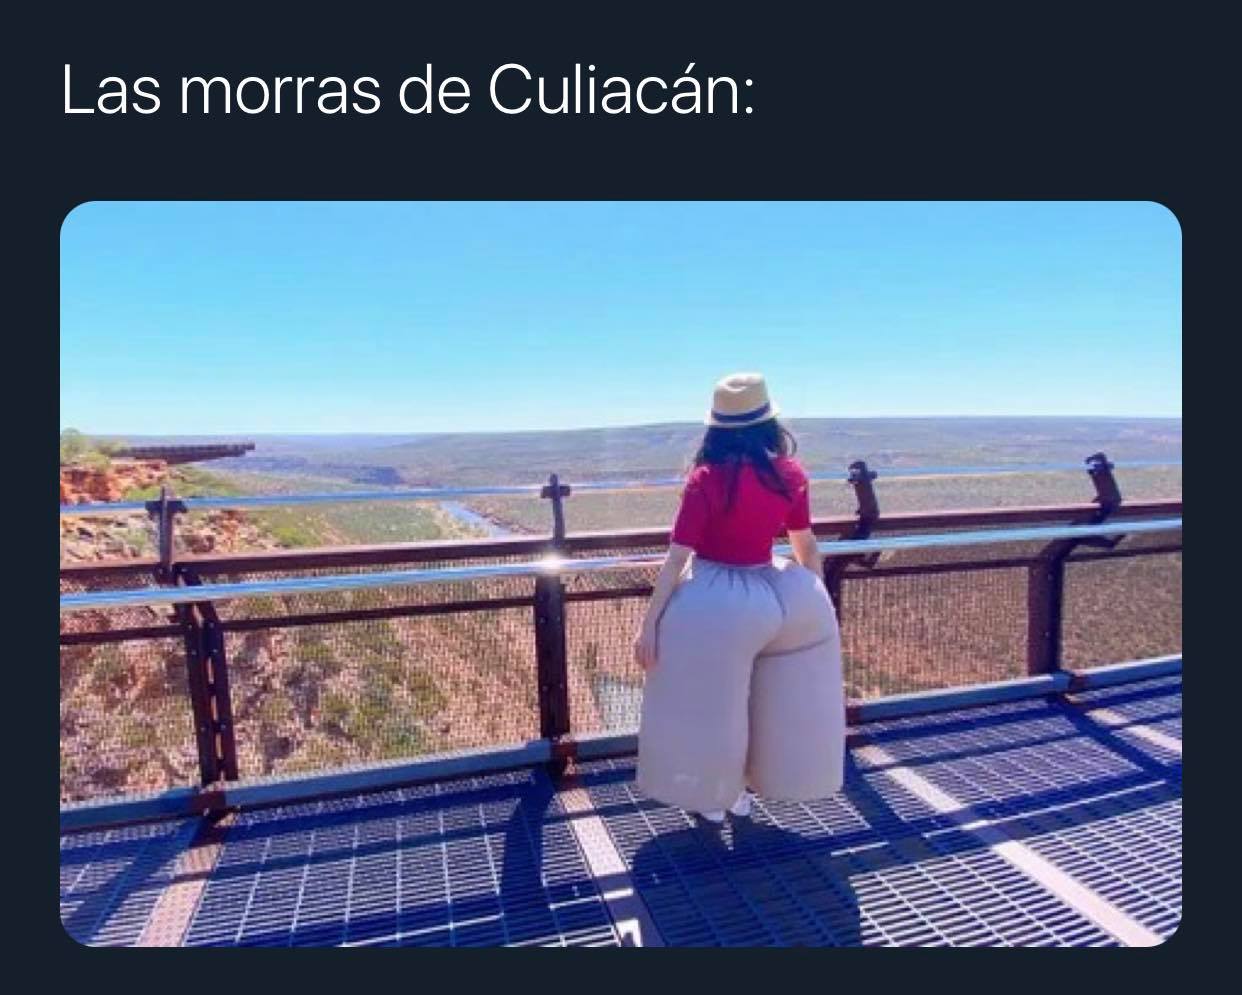 Las morras de Culiacán: